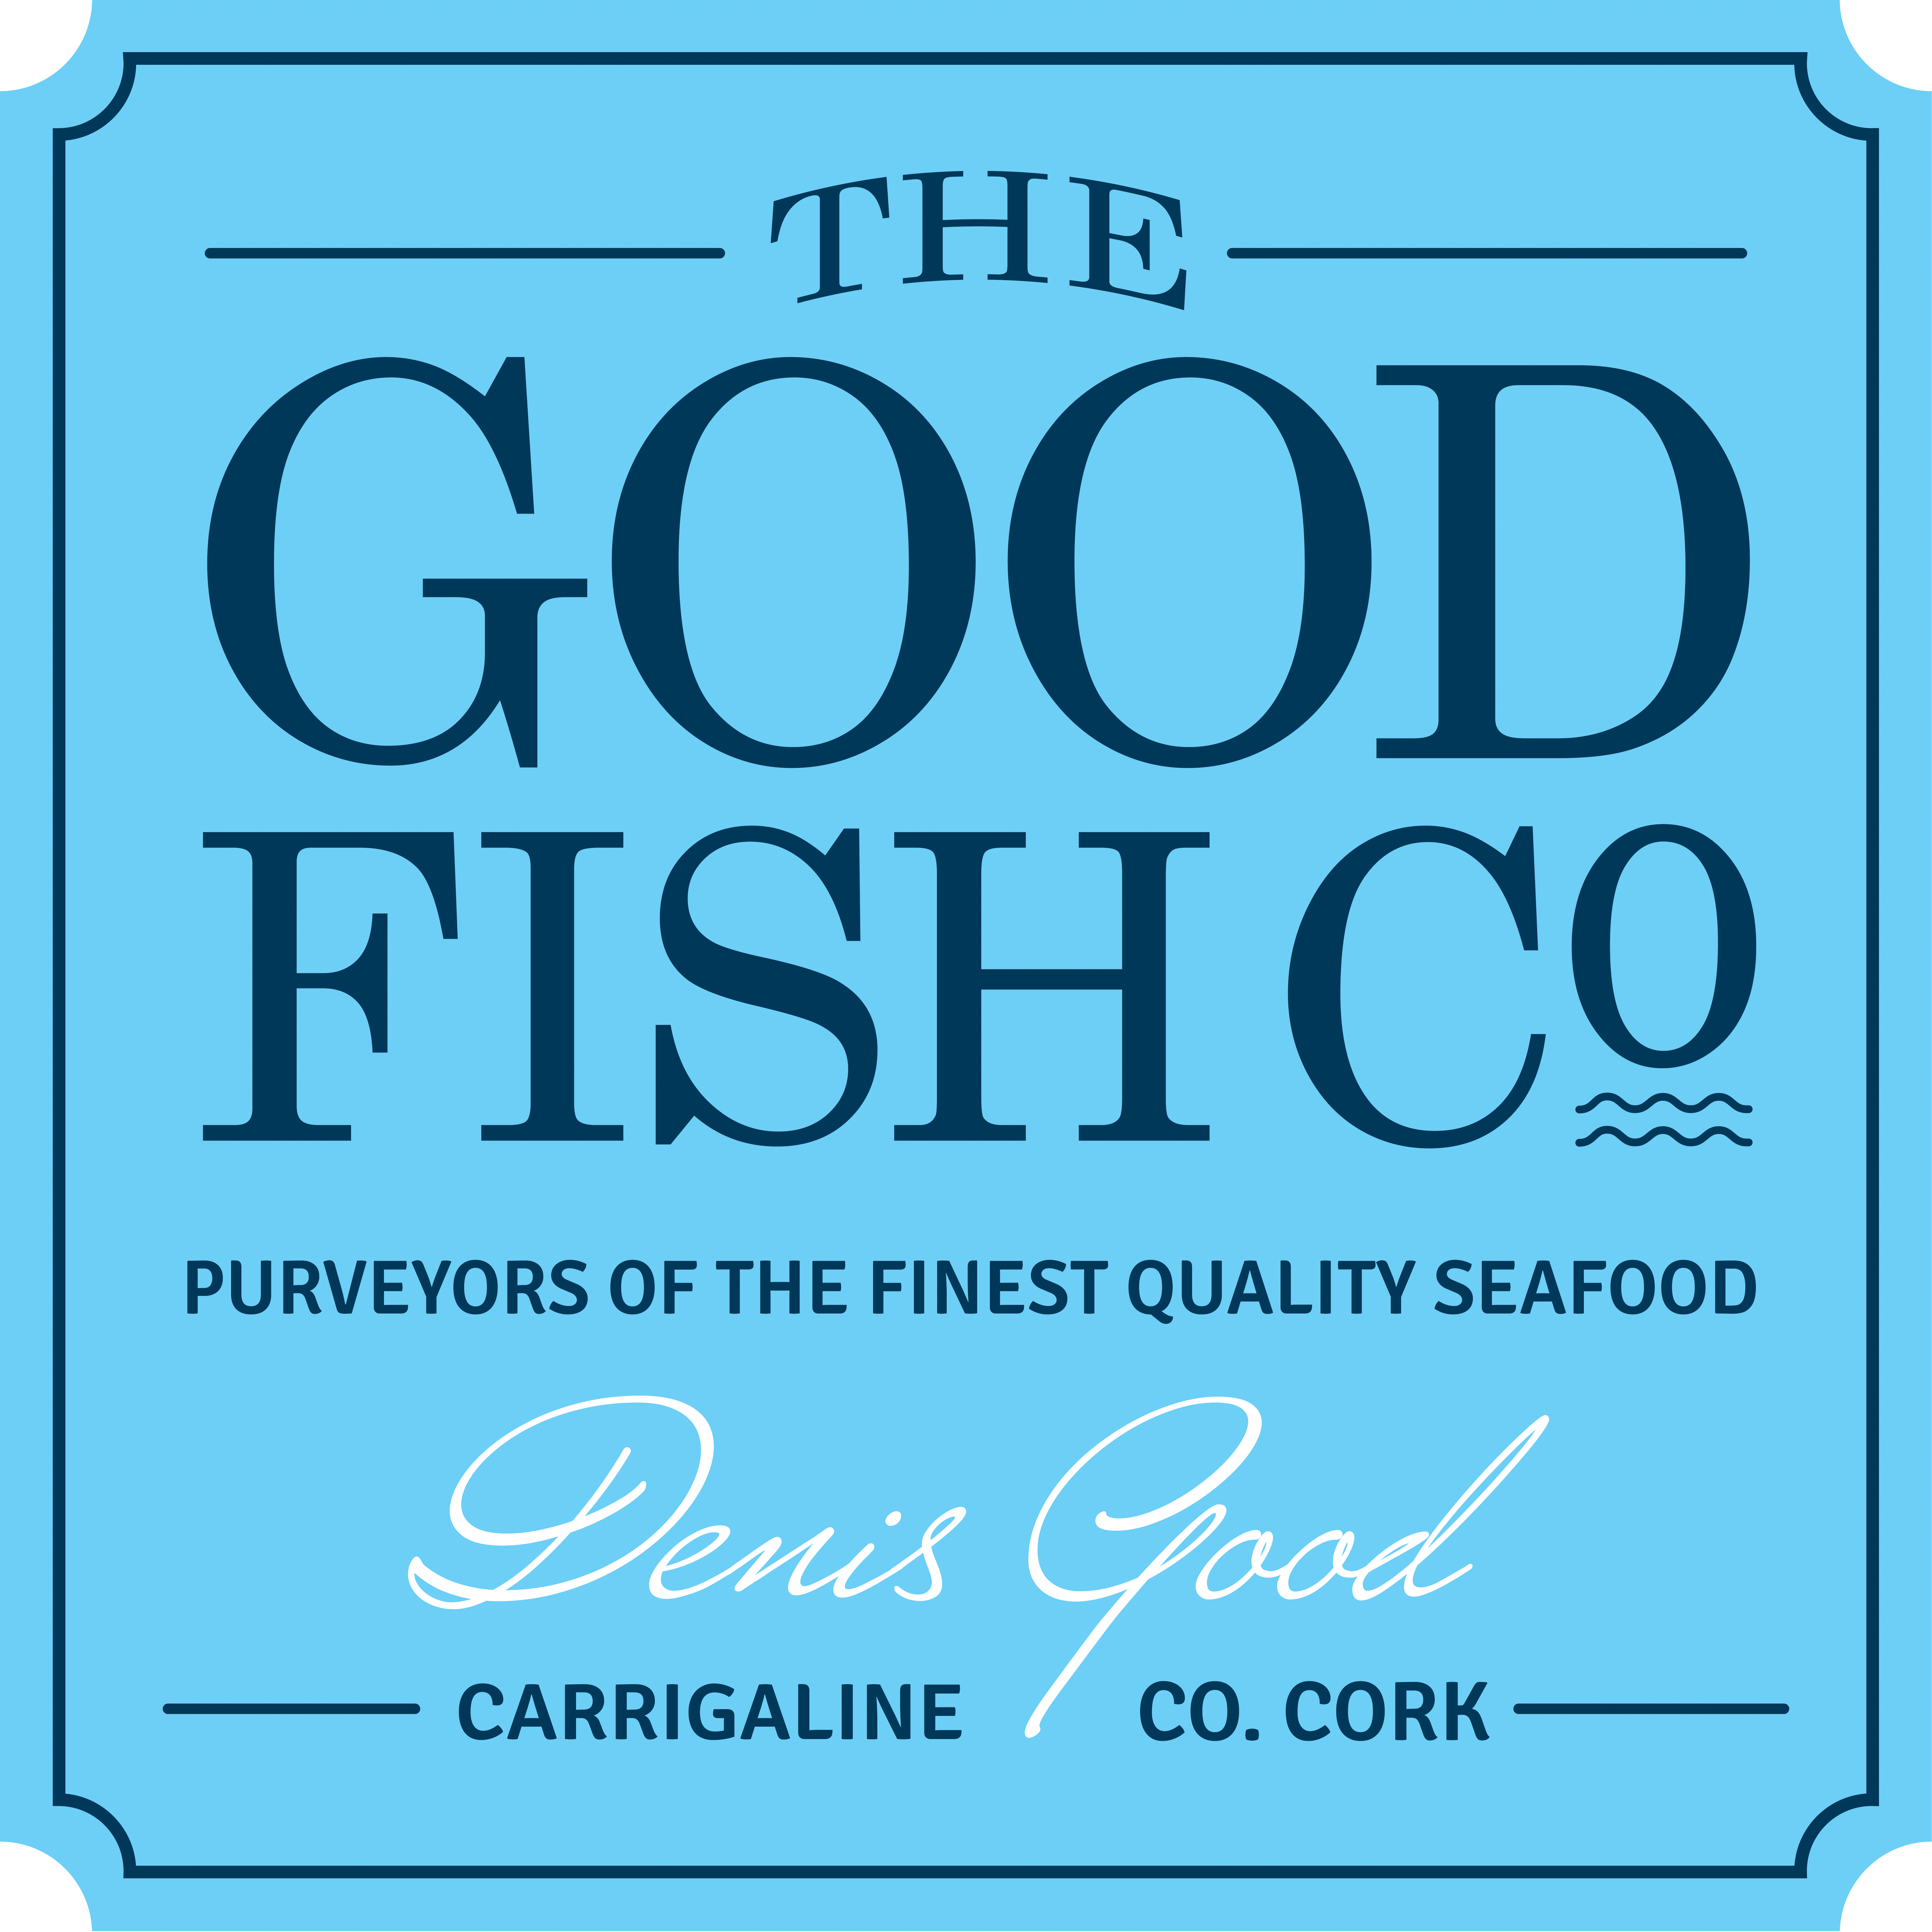 The Good Fish Company